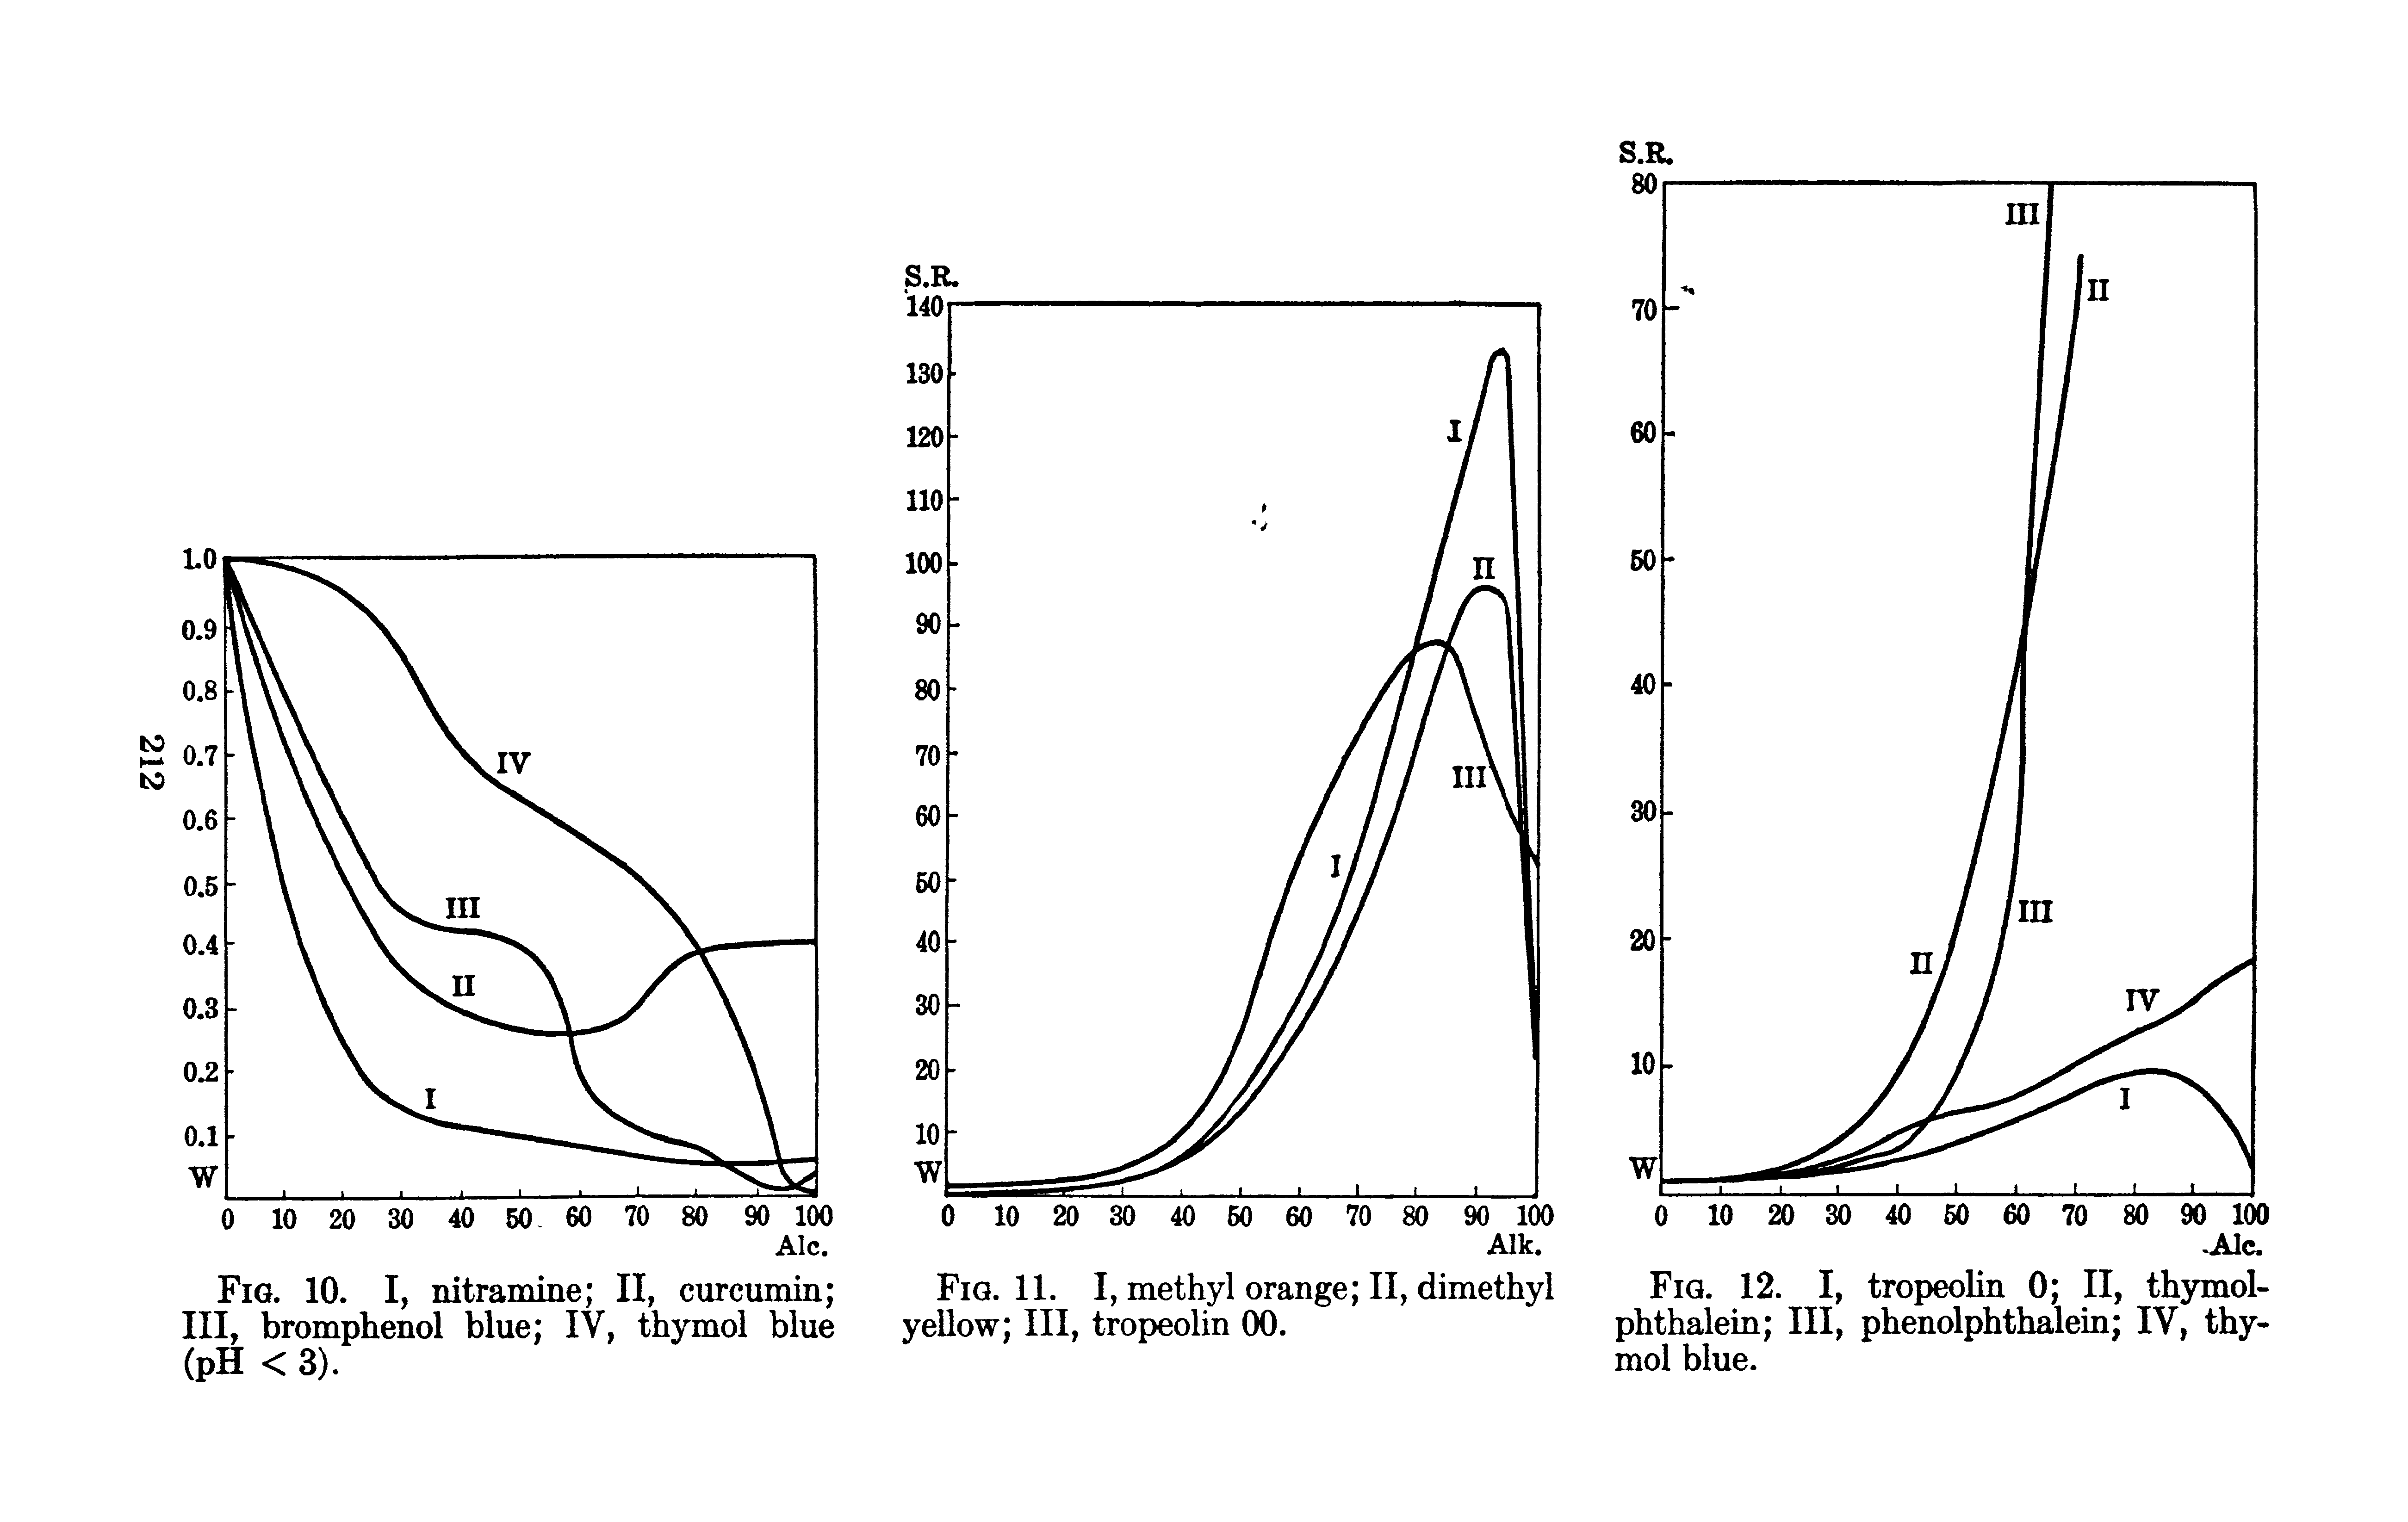 Fig. 12. I, tropeolin 0 II, thymol-phthalein III, phenolphthalein IV, thymol blue.